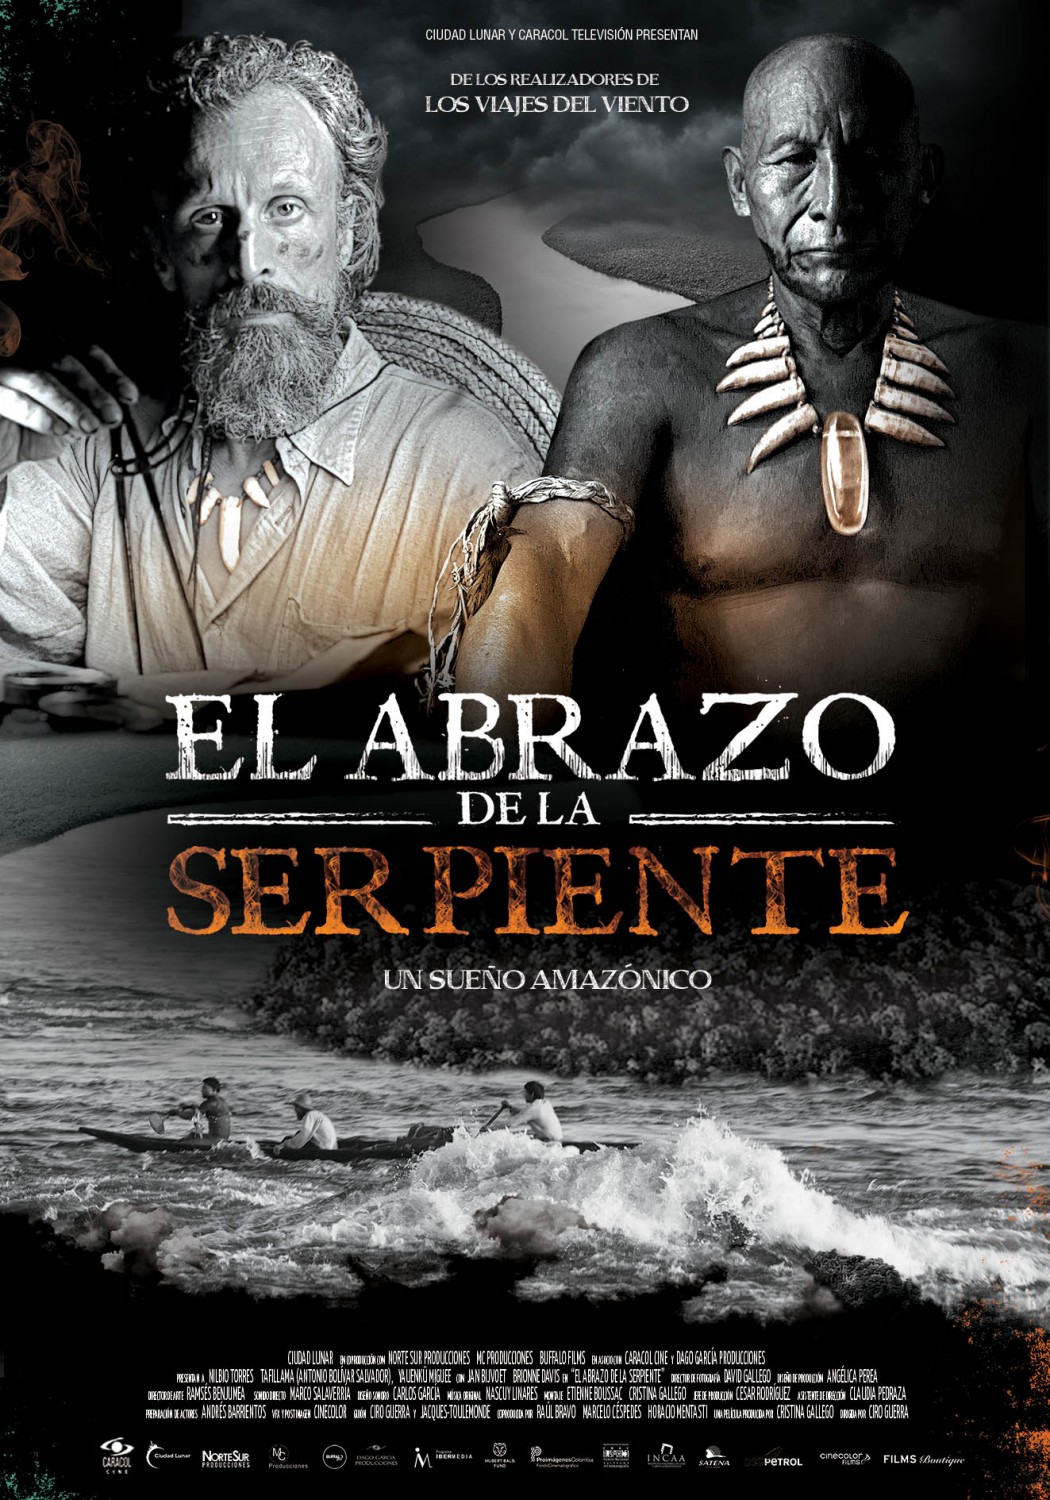 Extra Large Movie Poster Image for El abrazo de la serpiente (#1 of 2)